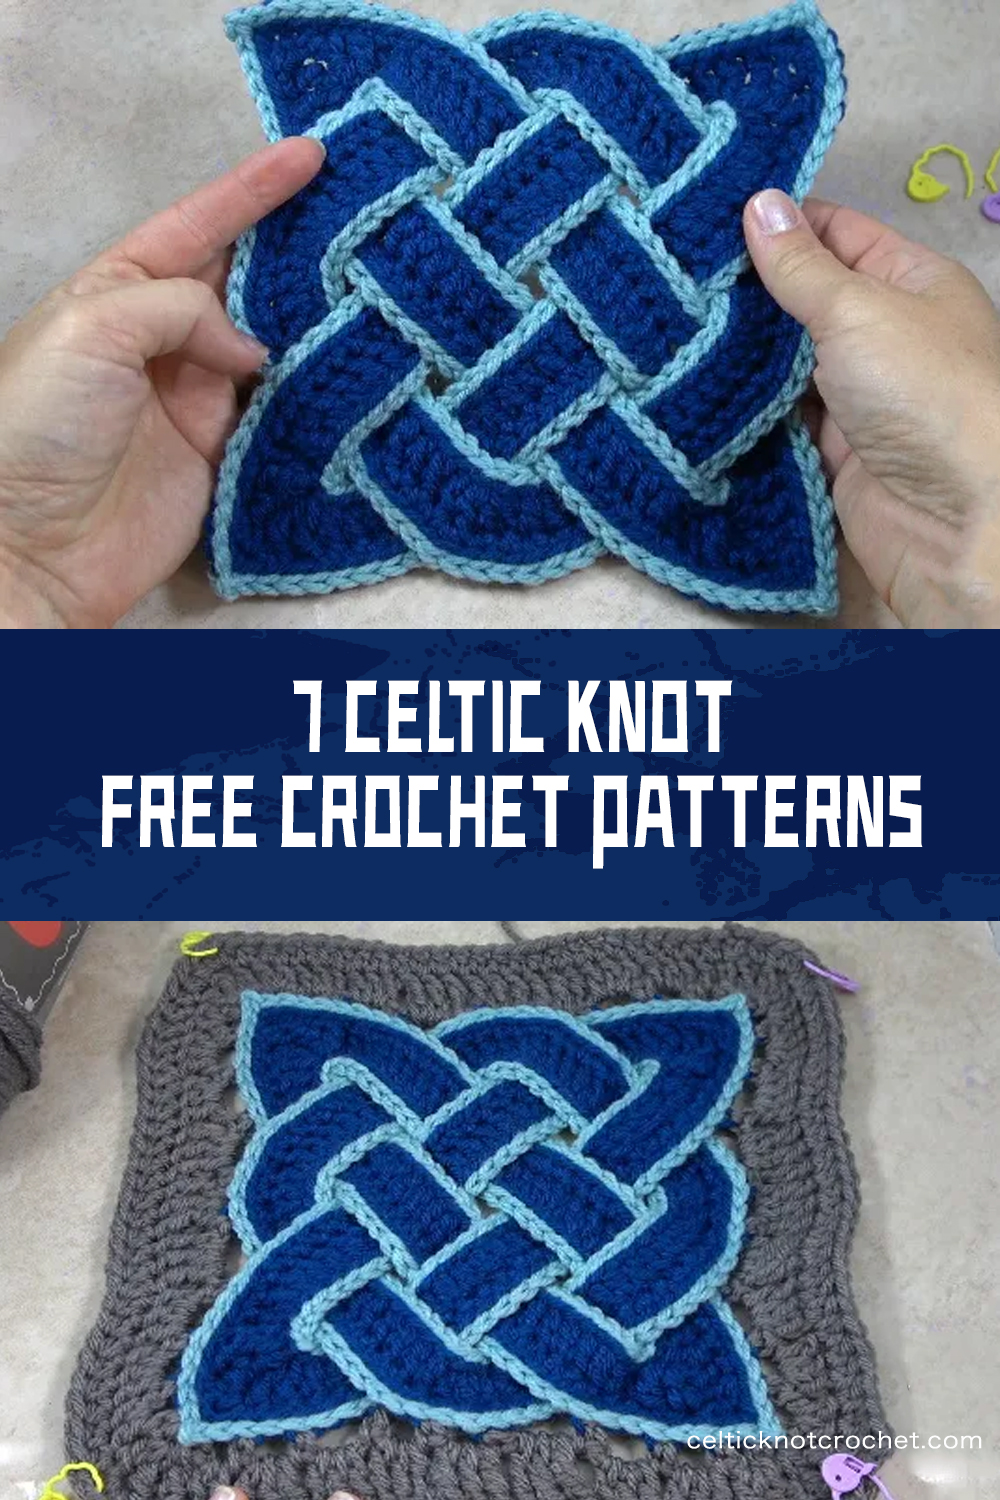 7 FREE Celtic Knot Crochet Patterns